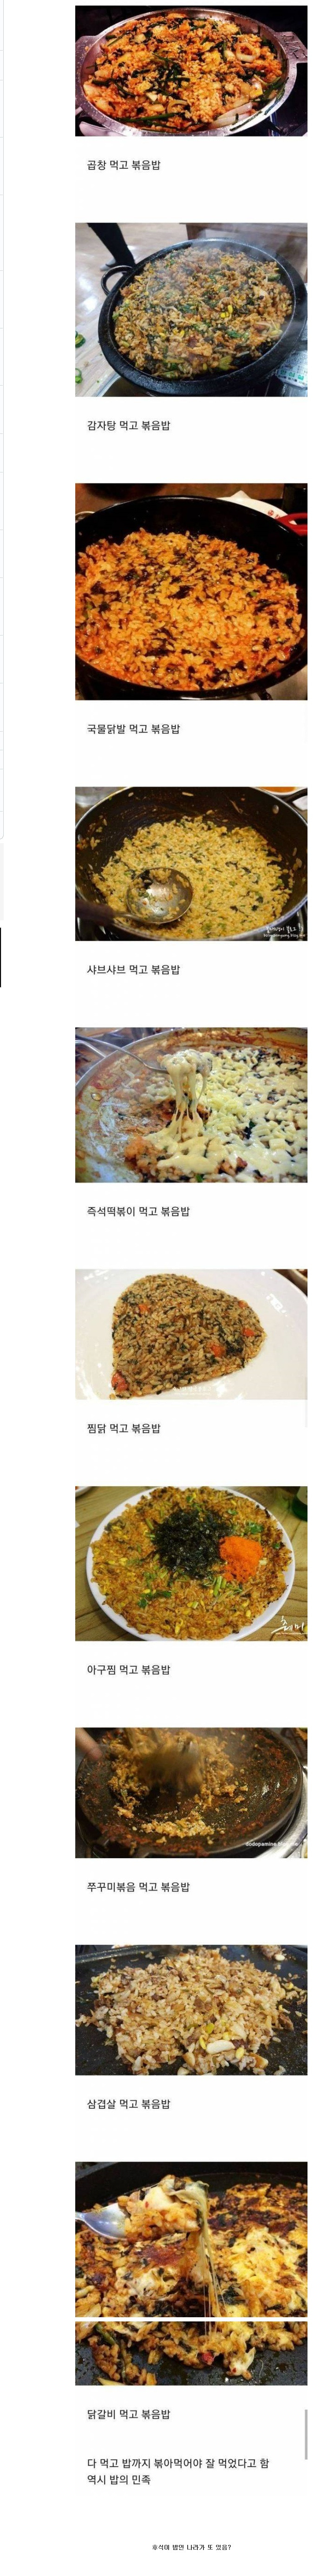  한국인들이 후식으로 가장 좋아하는 음식